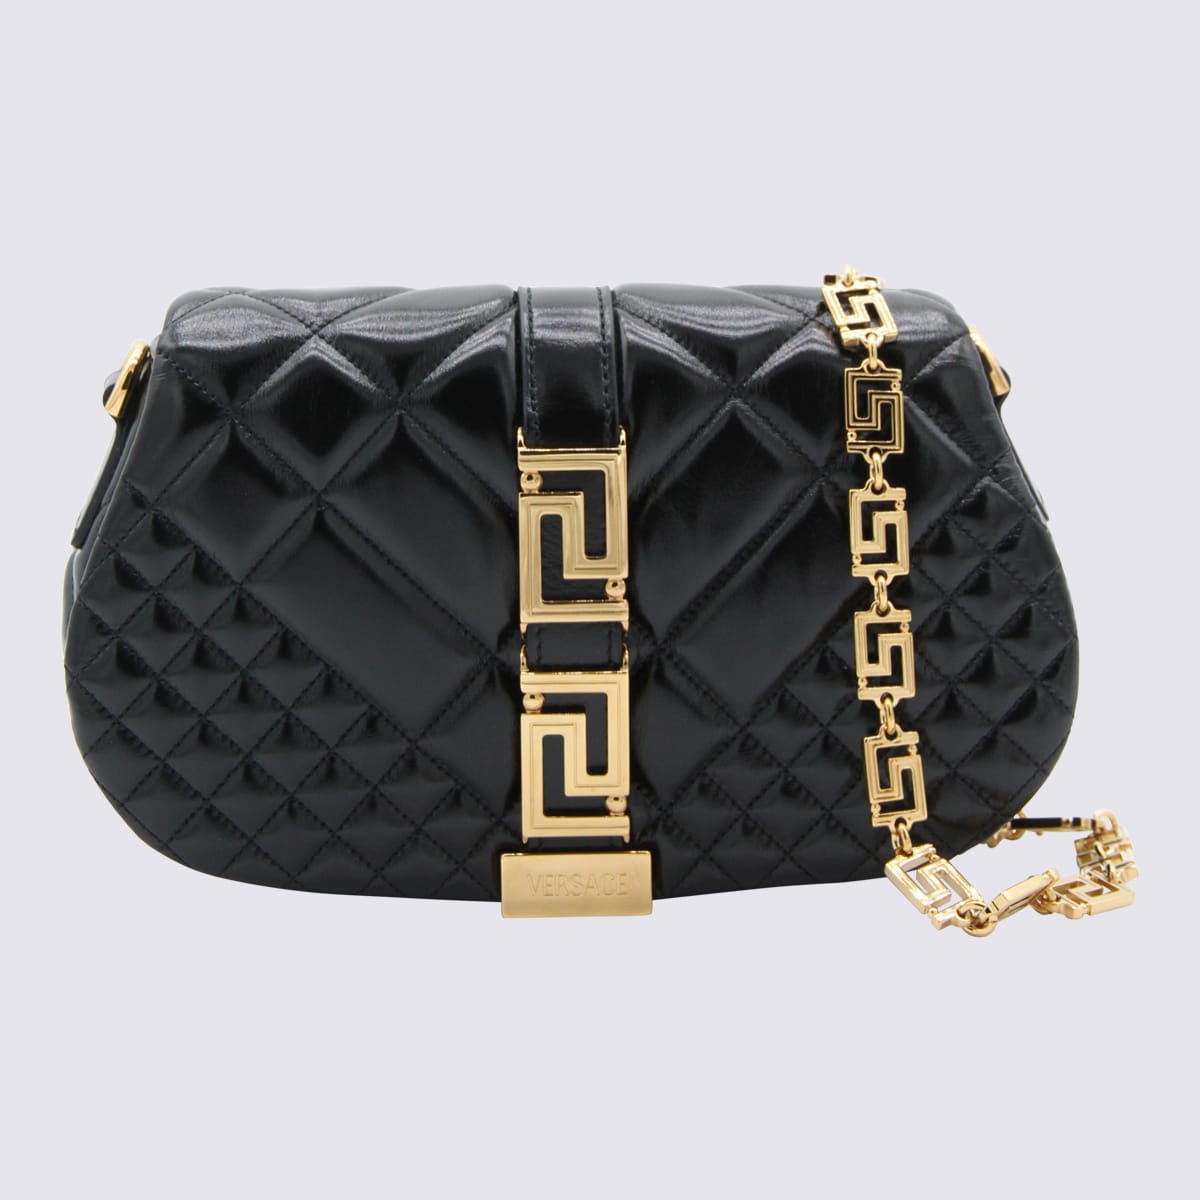 Versace Black Leather Greca Goddess Shoulder Bag